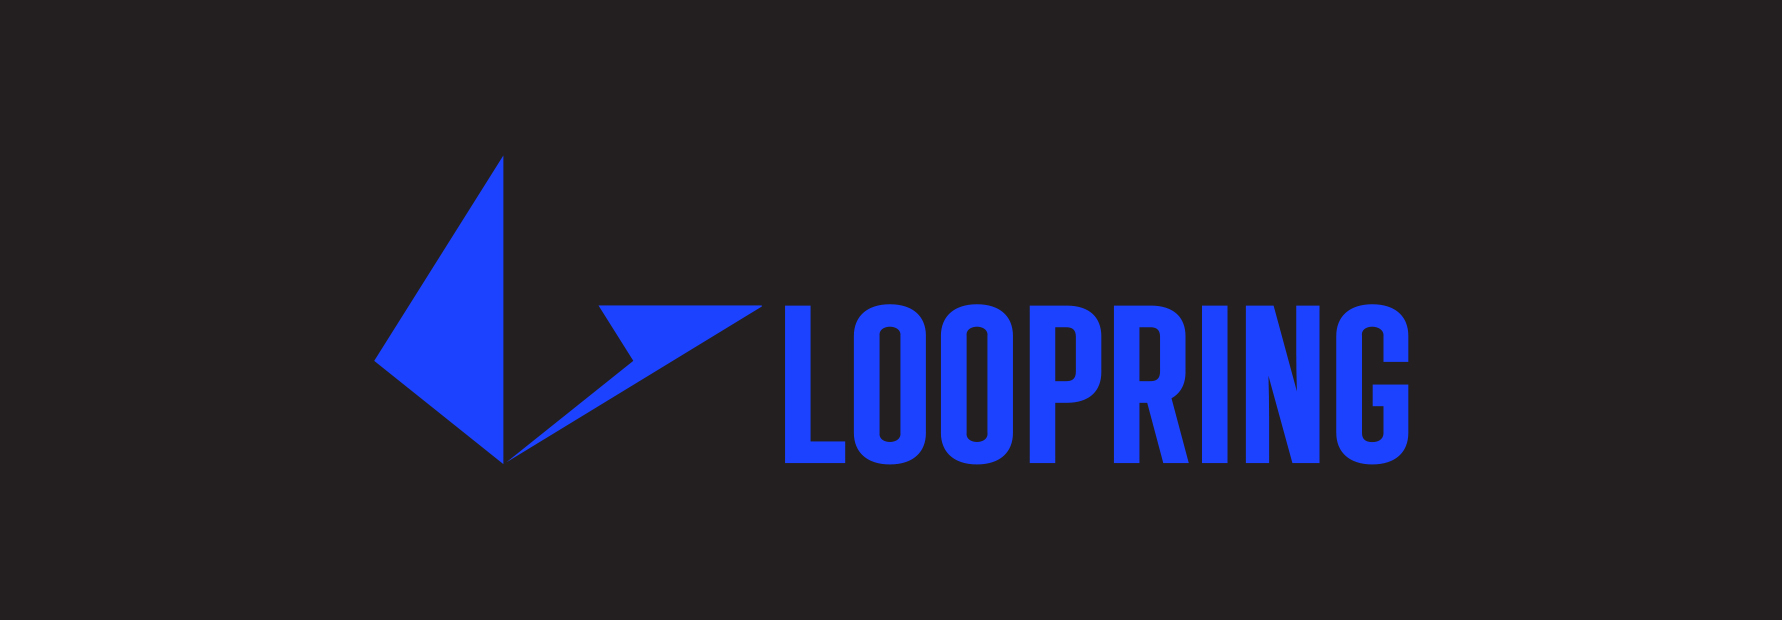 loopring-logo.jpg